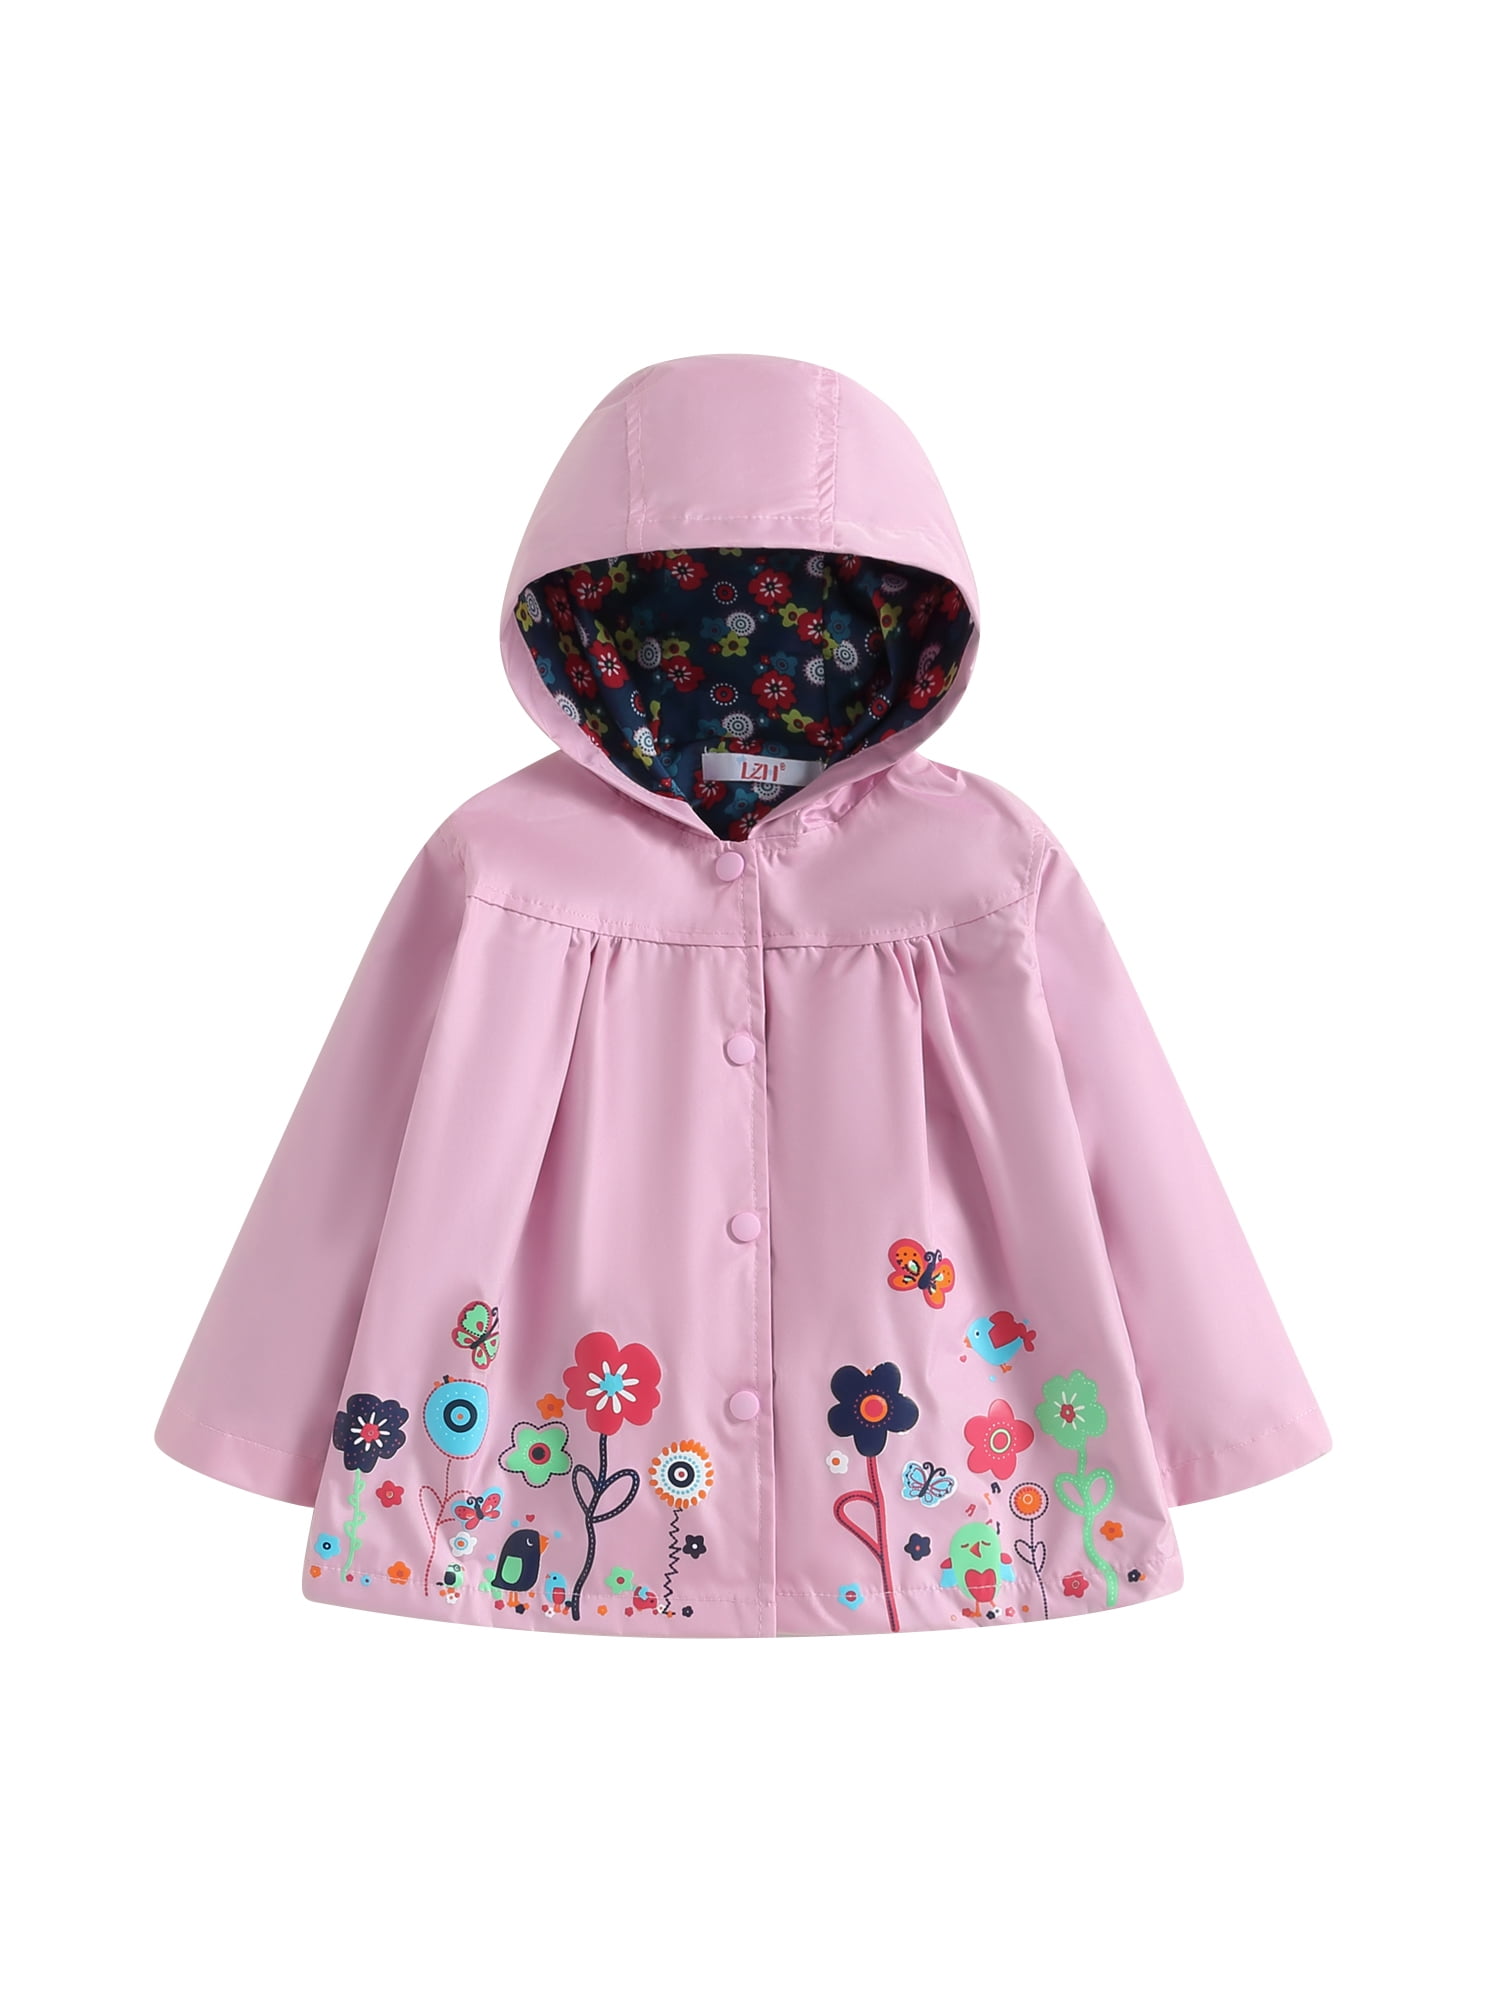 Kids Toddler Girls Flowers Hooded Waterproof Windproof Raincoat Jacket ...